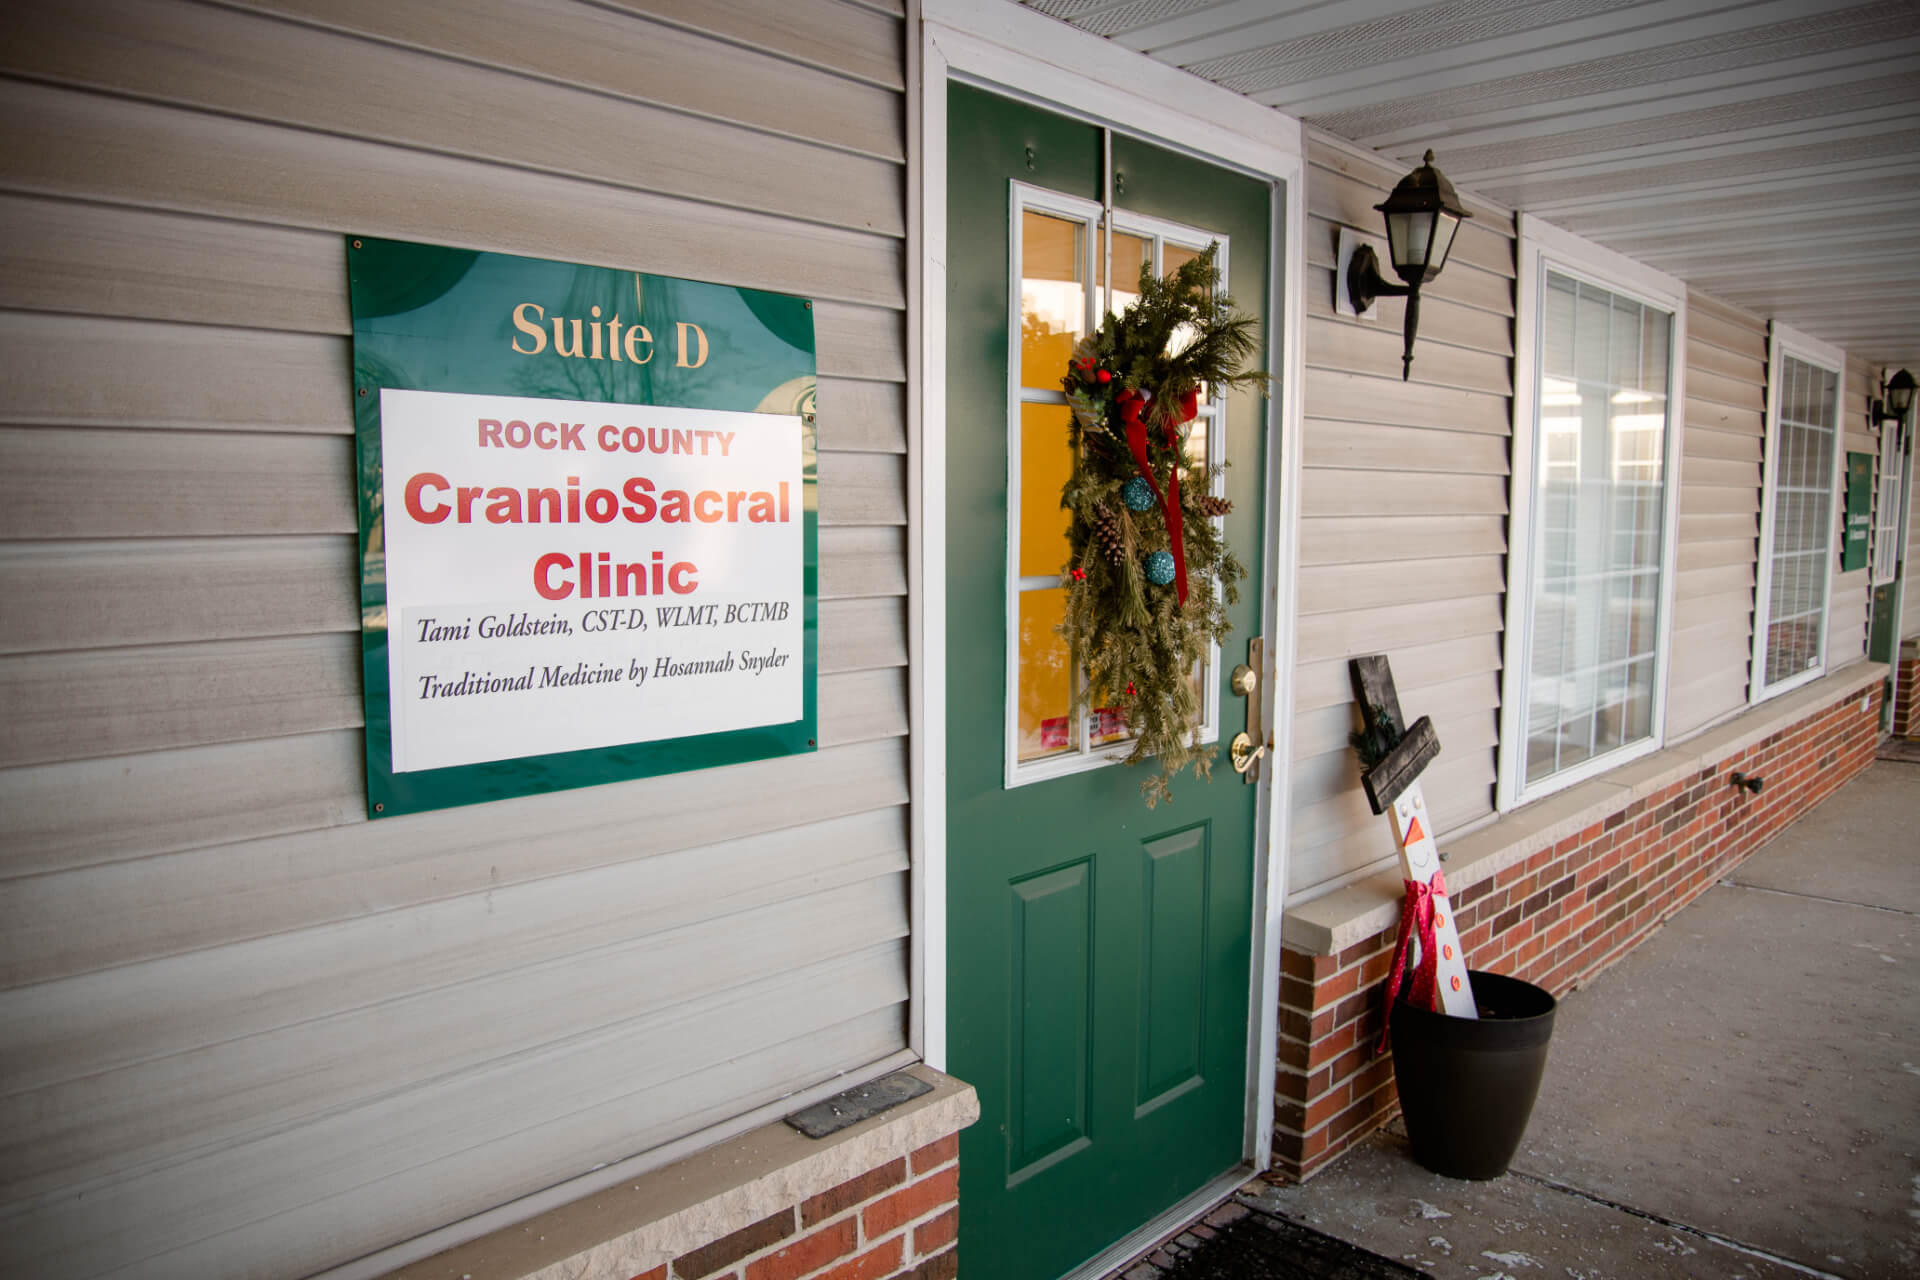 Entrance to the Rock County Craniosacral Clinic